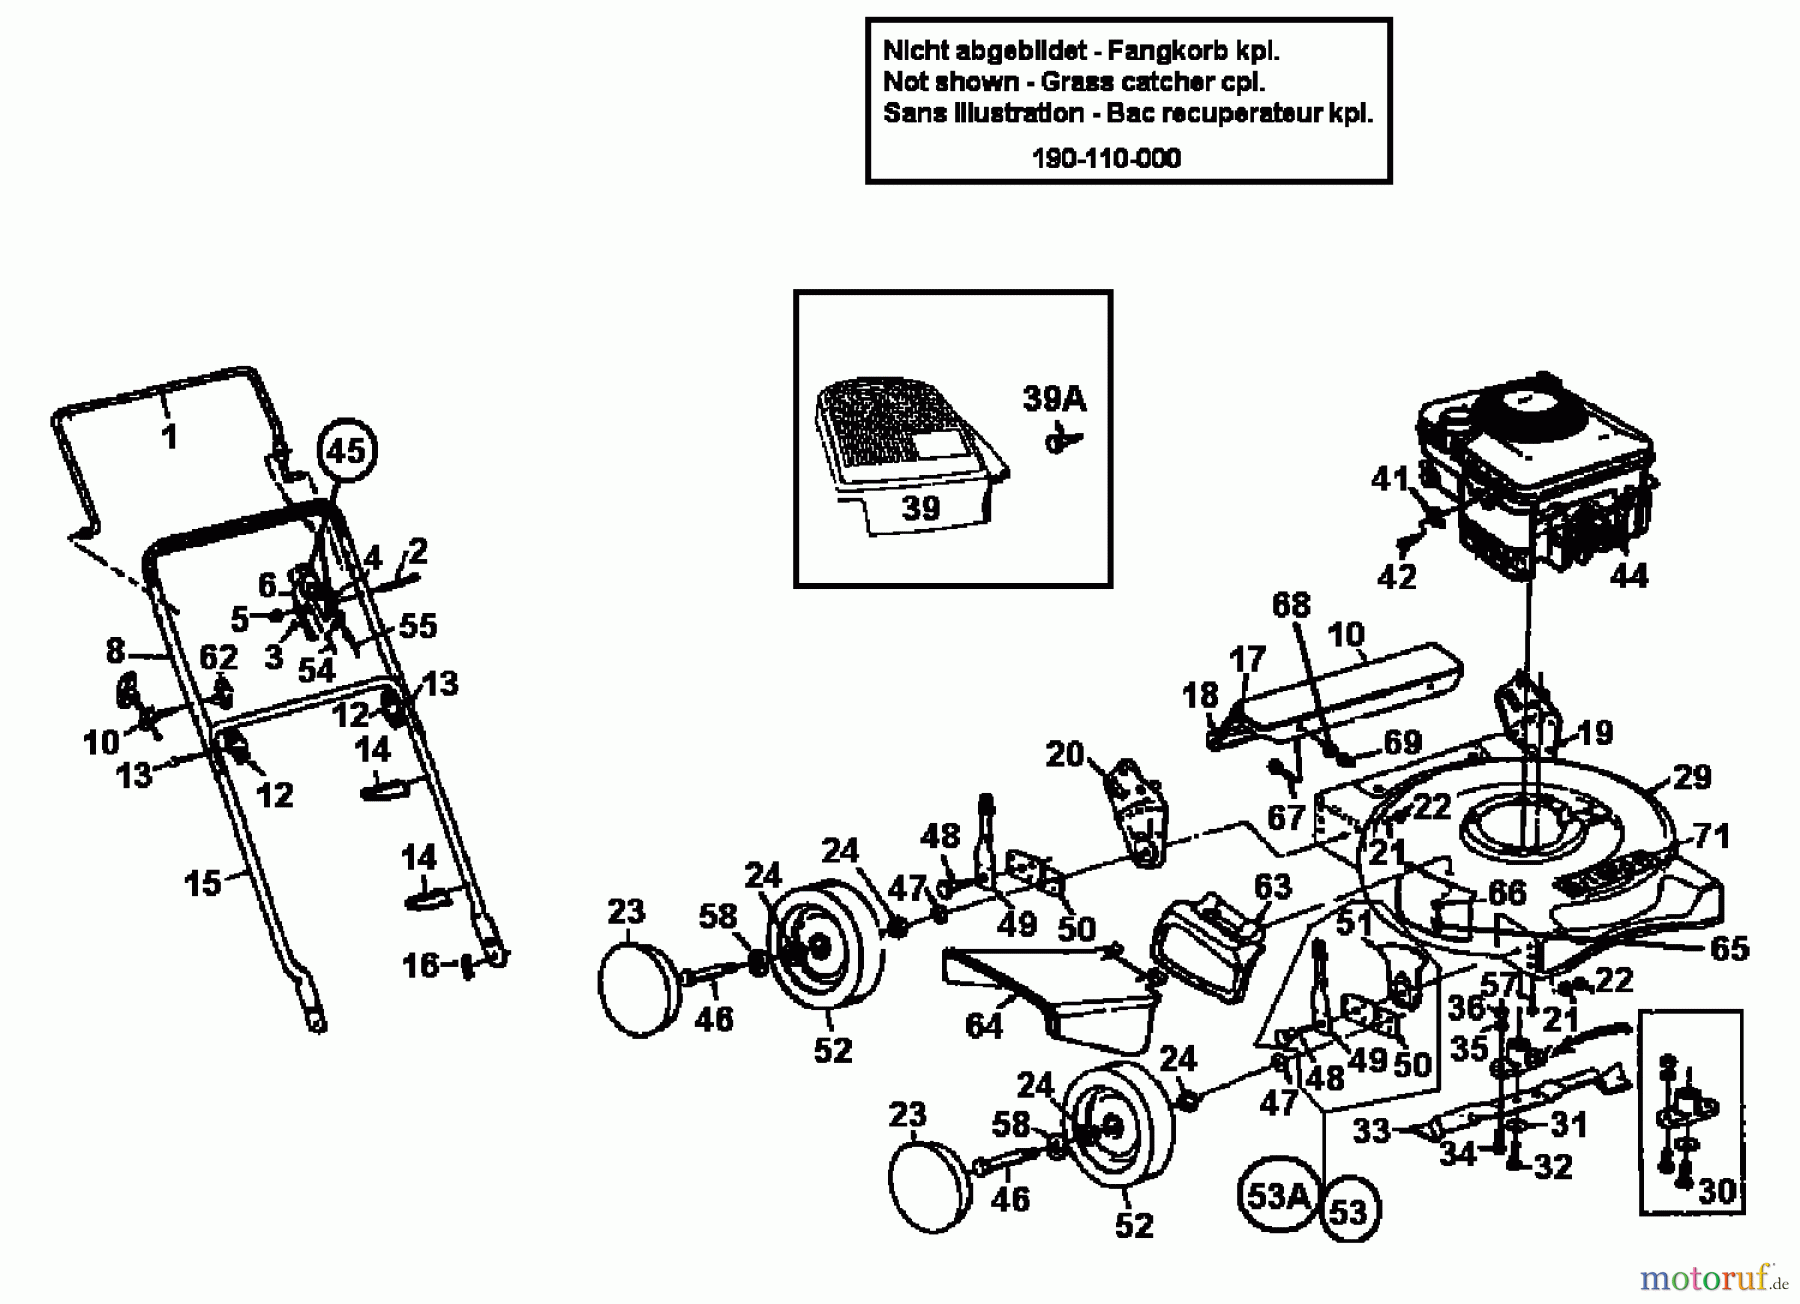  Gutbrod Motormäher SB 46 116-704A604  (1996) Grundgerät